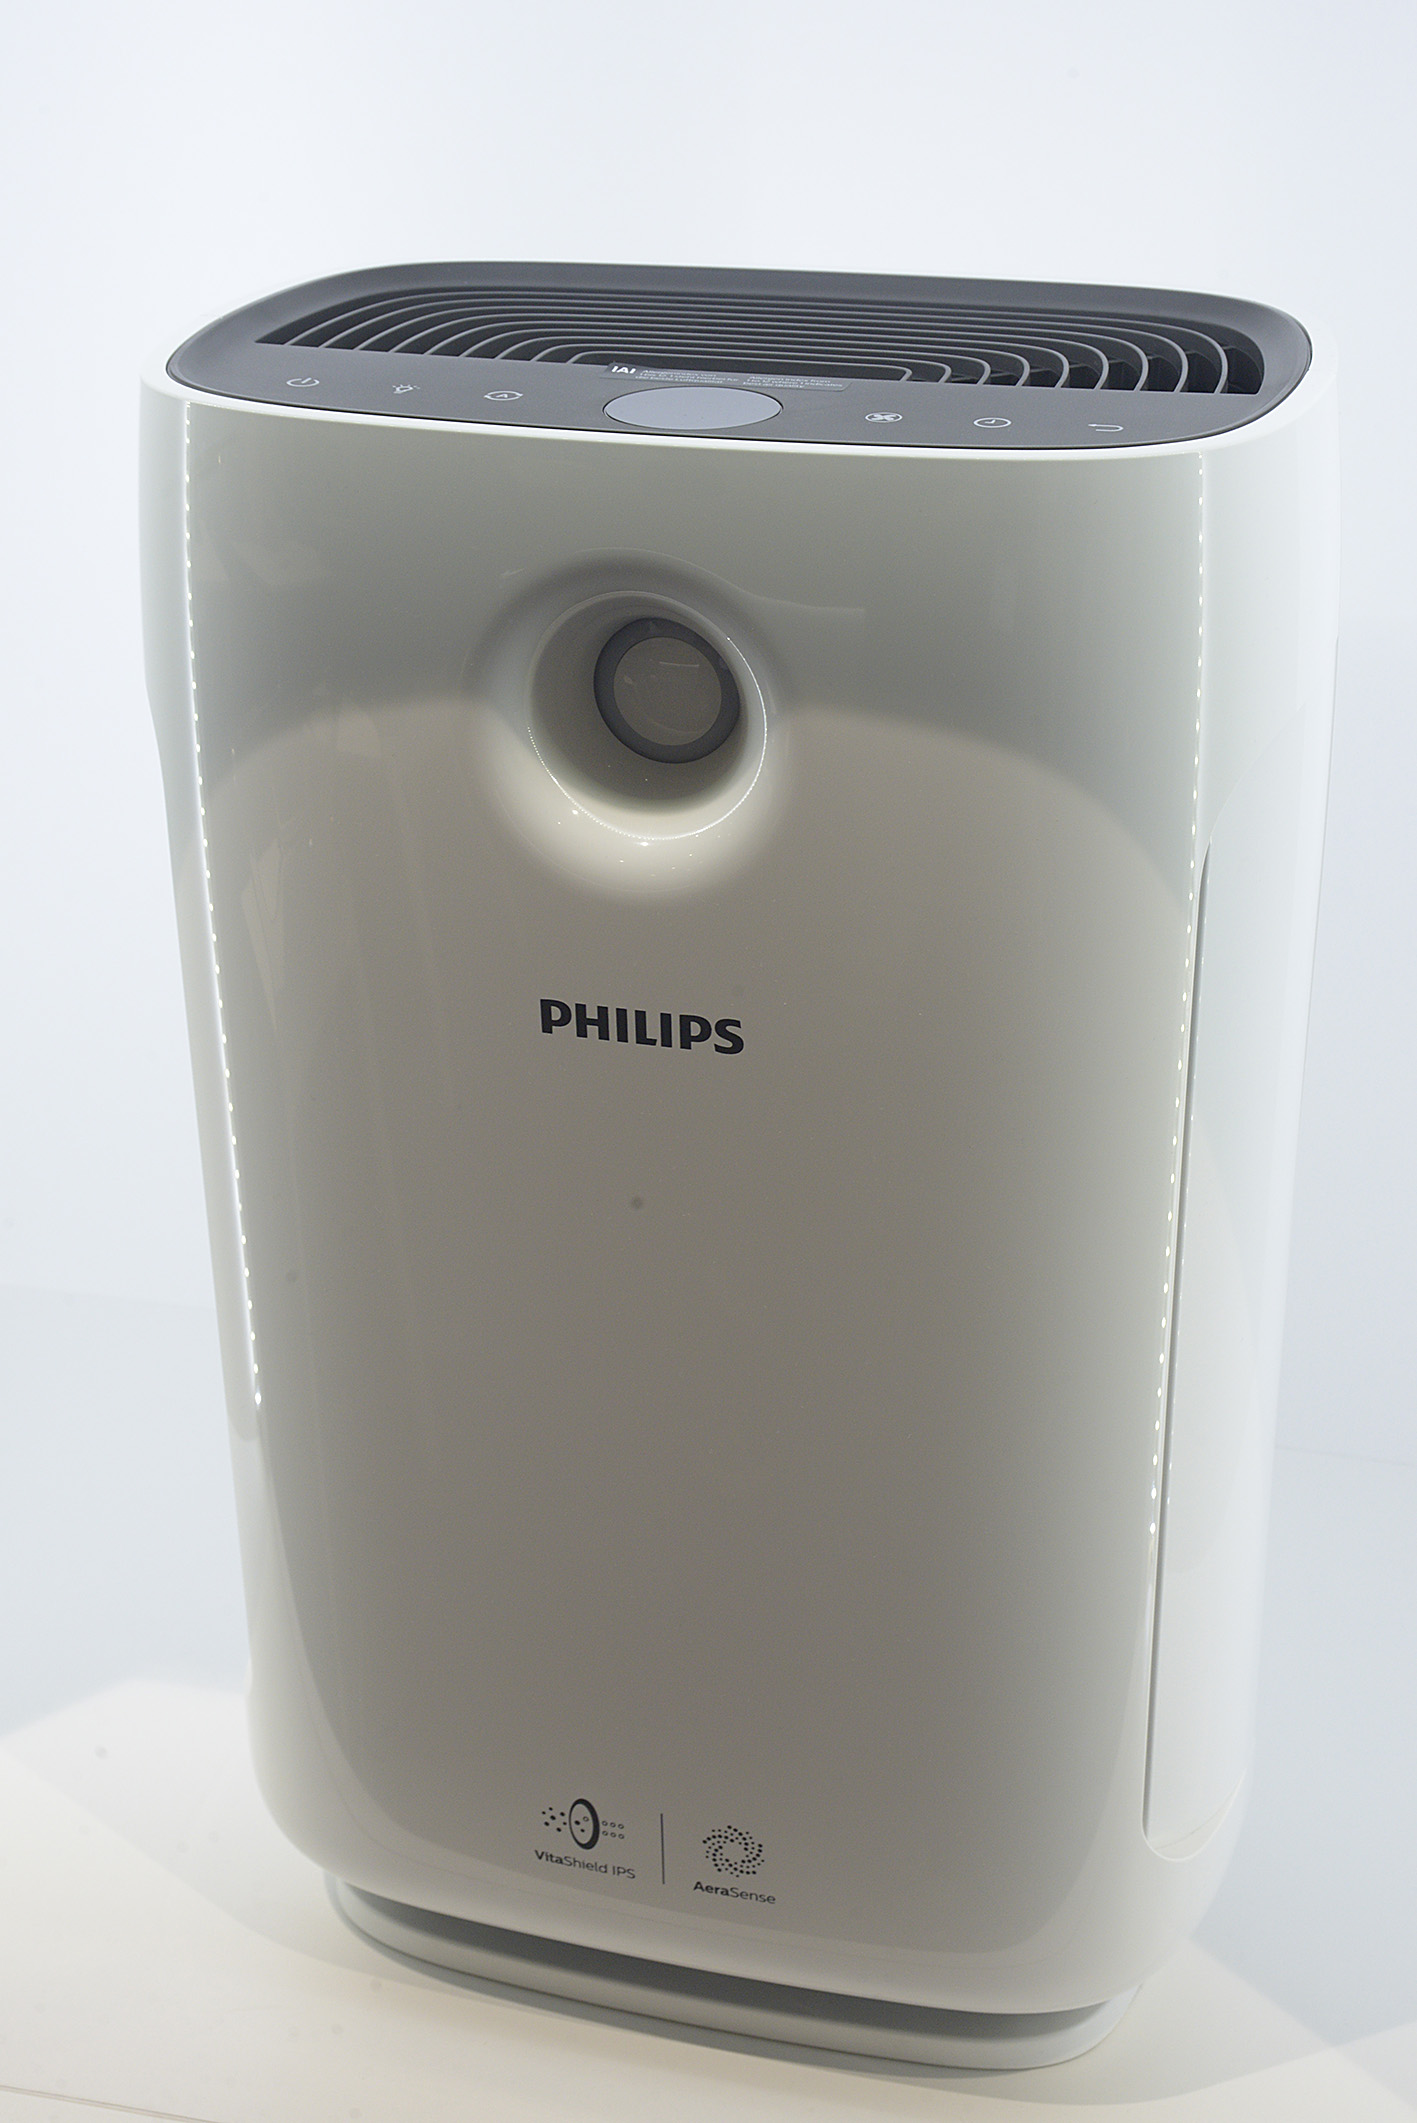 Foto: Michael B. Rehders Wer im Hochsommer Filme schauen möchte, dem bietet Philips ein hilfreiches Accessoire - Ein Klimagerät.